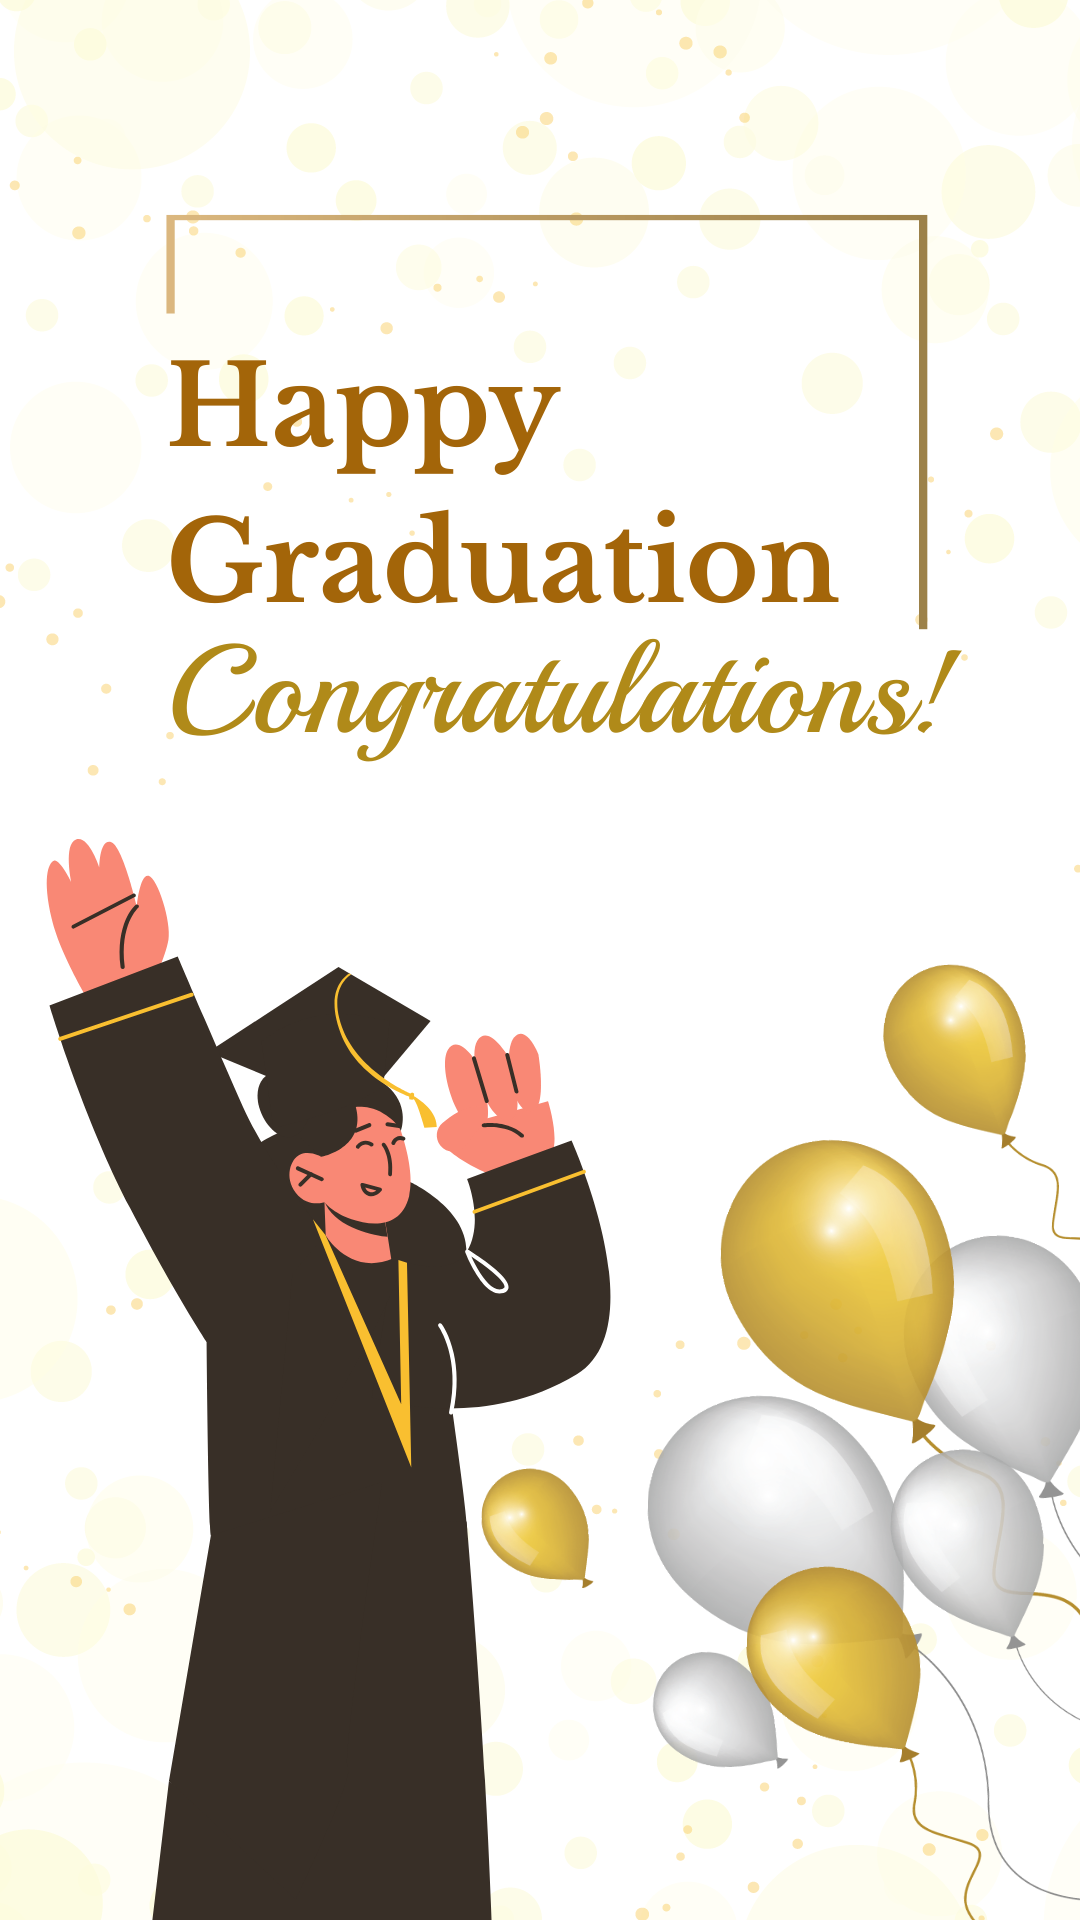 Congratulations Happy Graduation Banner